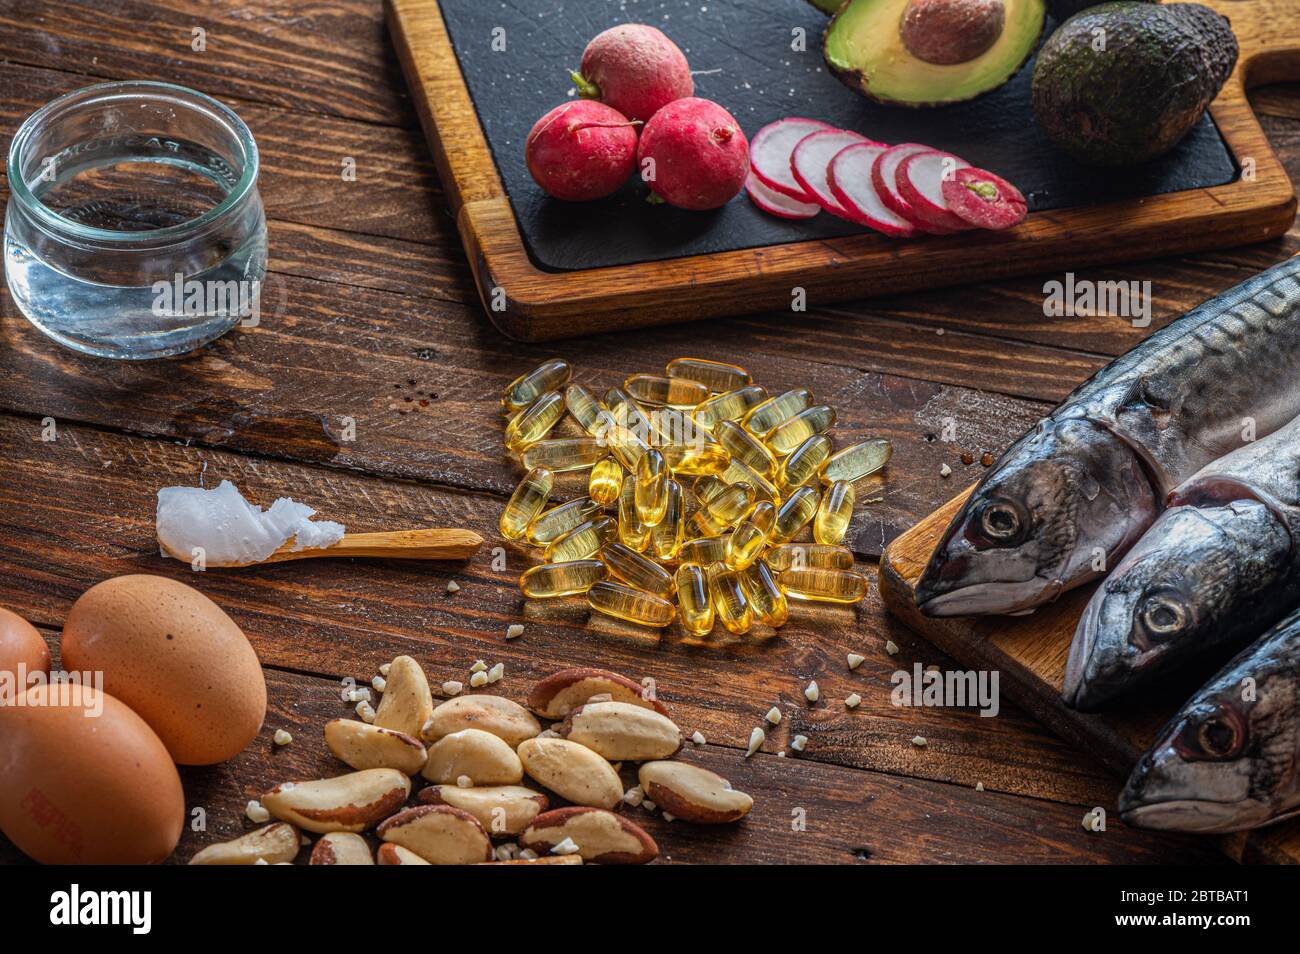 Nahaufnahme von ketogenem Futter: MCT-Öl, Makrelenfisch, Avocado, Eier, Kokosbutter, brasilianische Nüsse, Radieschen, Omega-3-Ergänzungen auf einem Holztisch Stockfoto